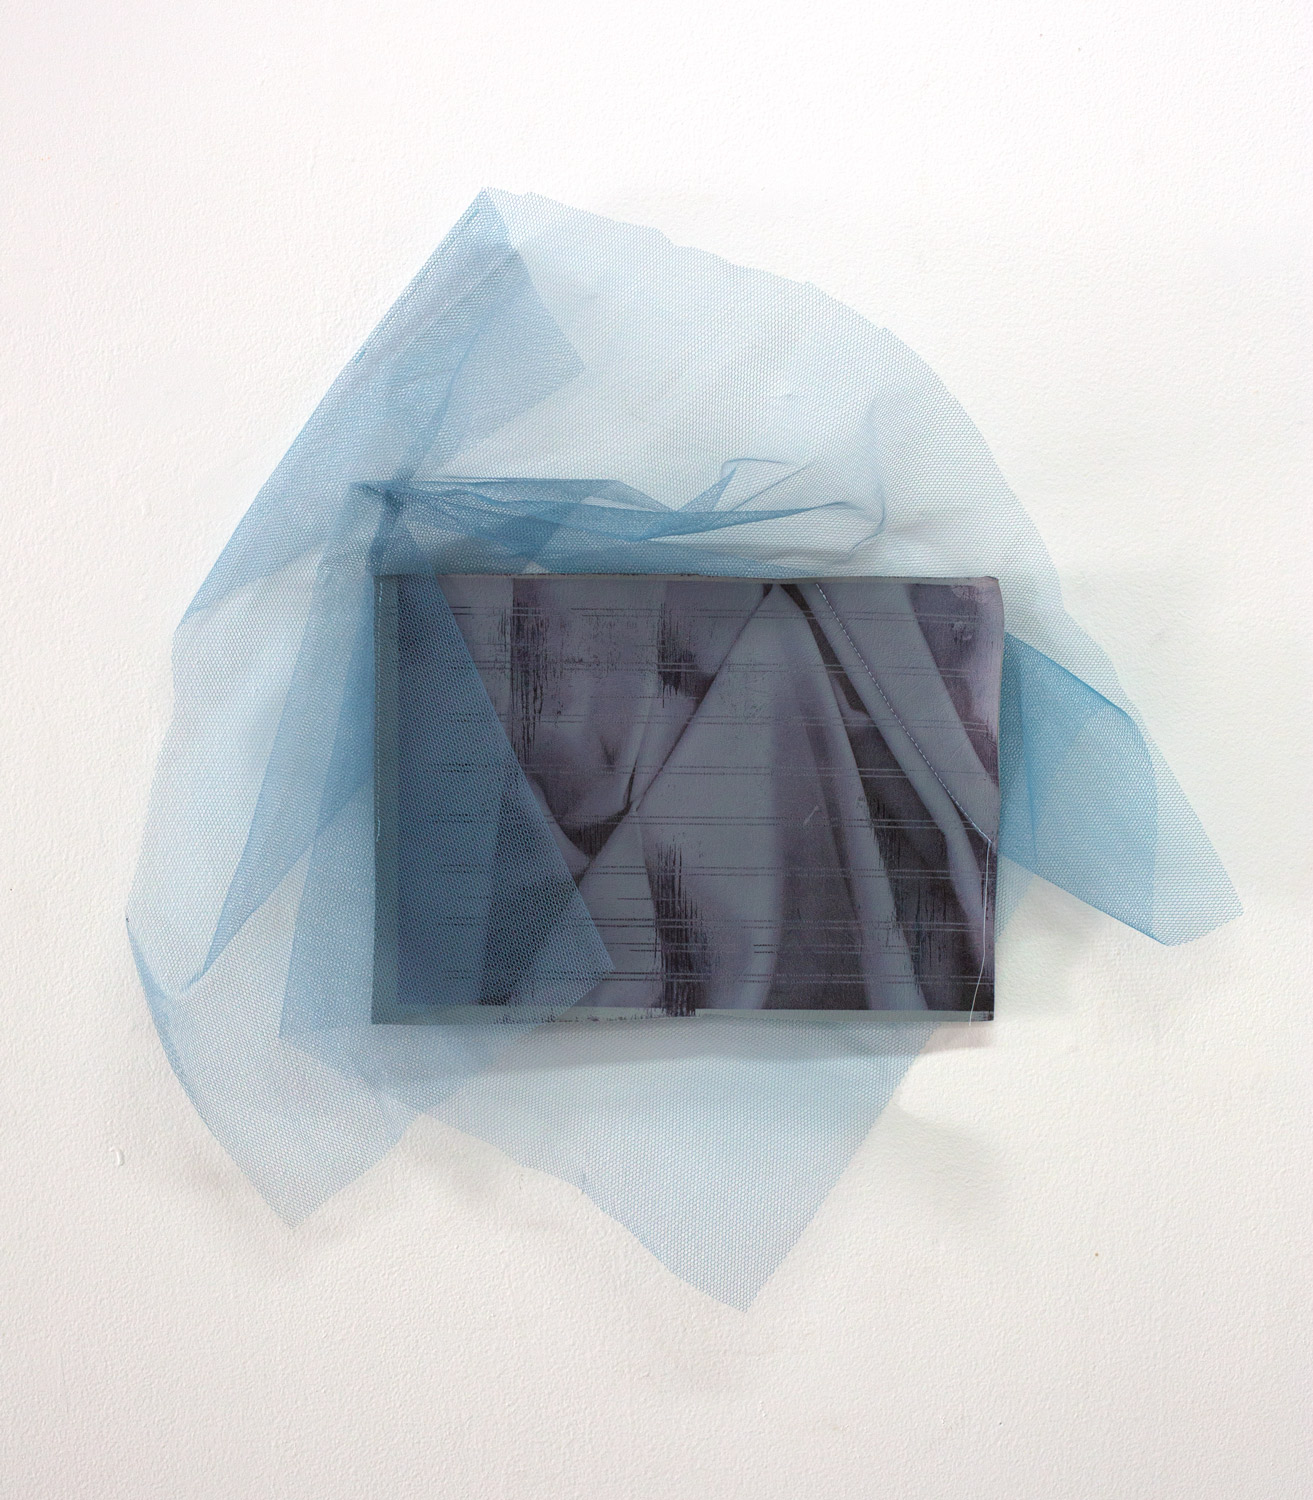   Seal Mist , 2019, inkjet print on vinyl, tulle, thread, 55 x 53cm  Photo: Xavier Burrow 